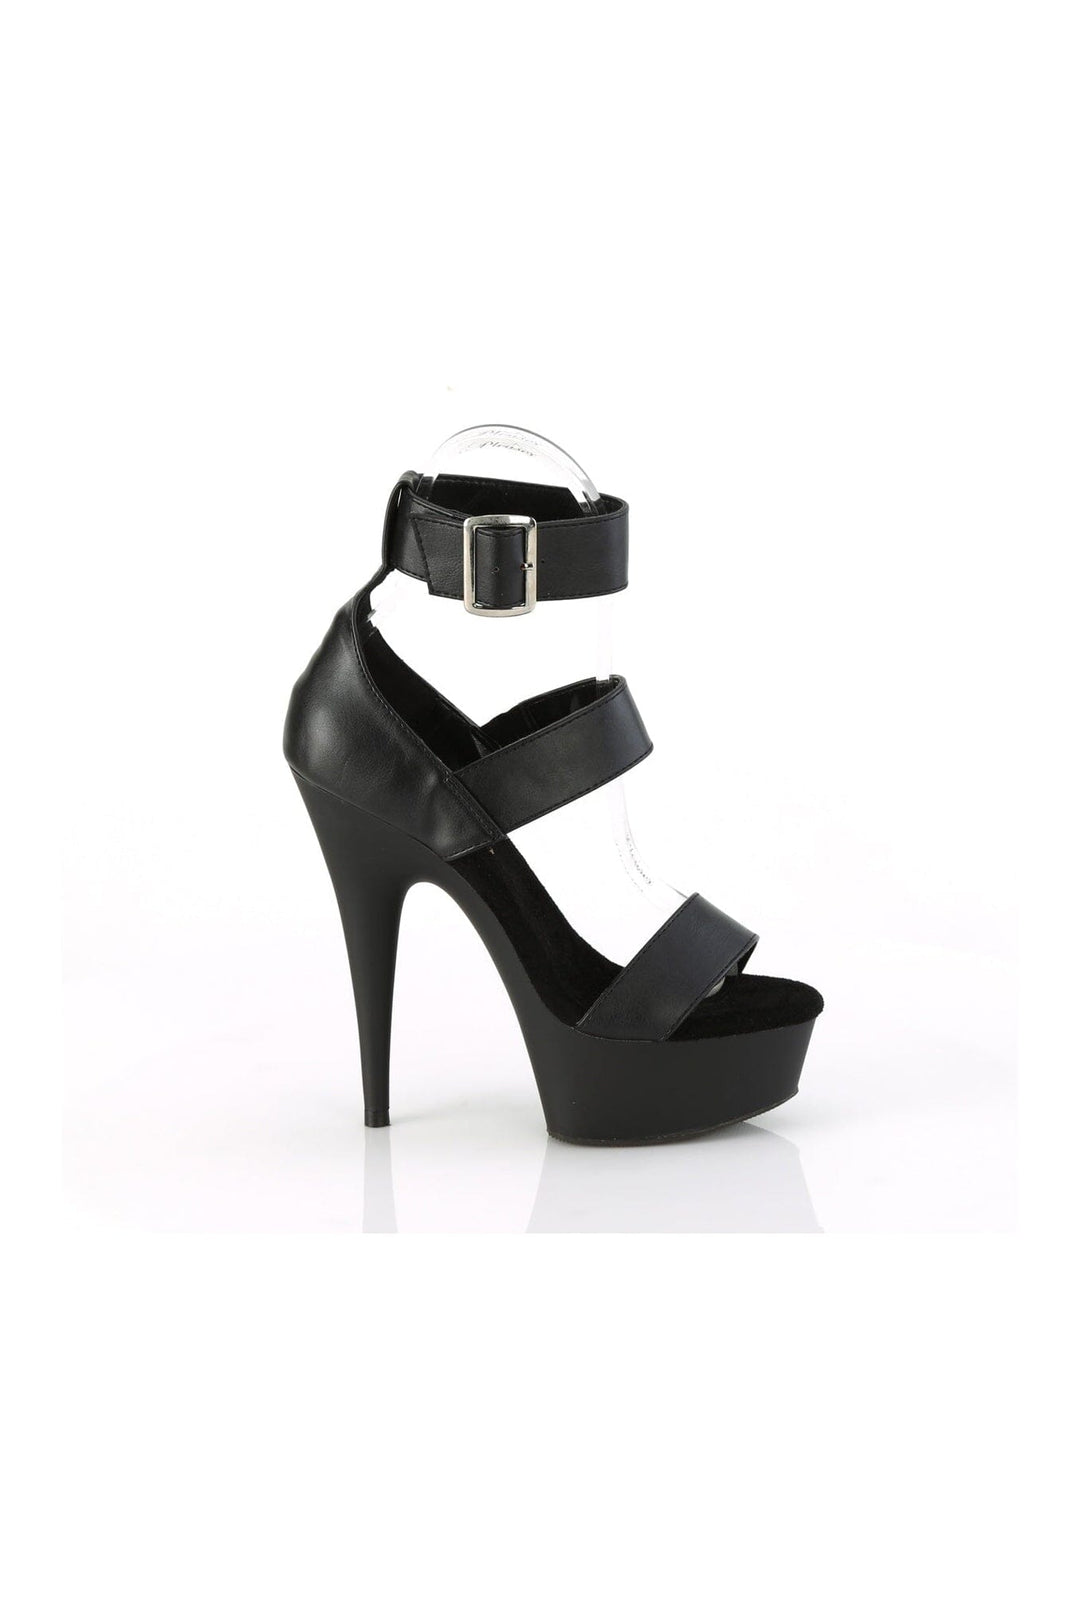 DELIGHT-629 Black Faux Leather Sandal-Sandals-Pleaser-SEXYSHOES.COM